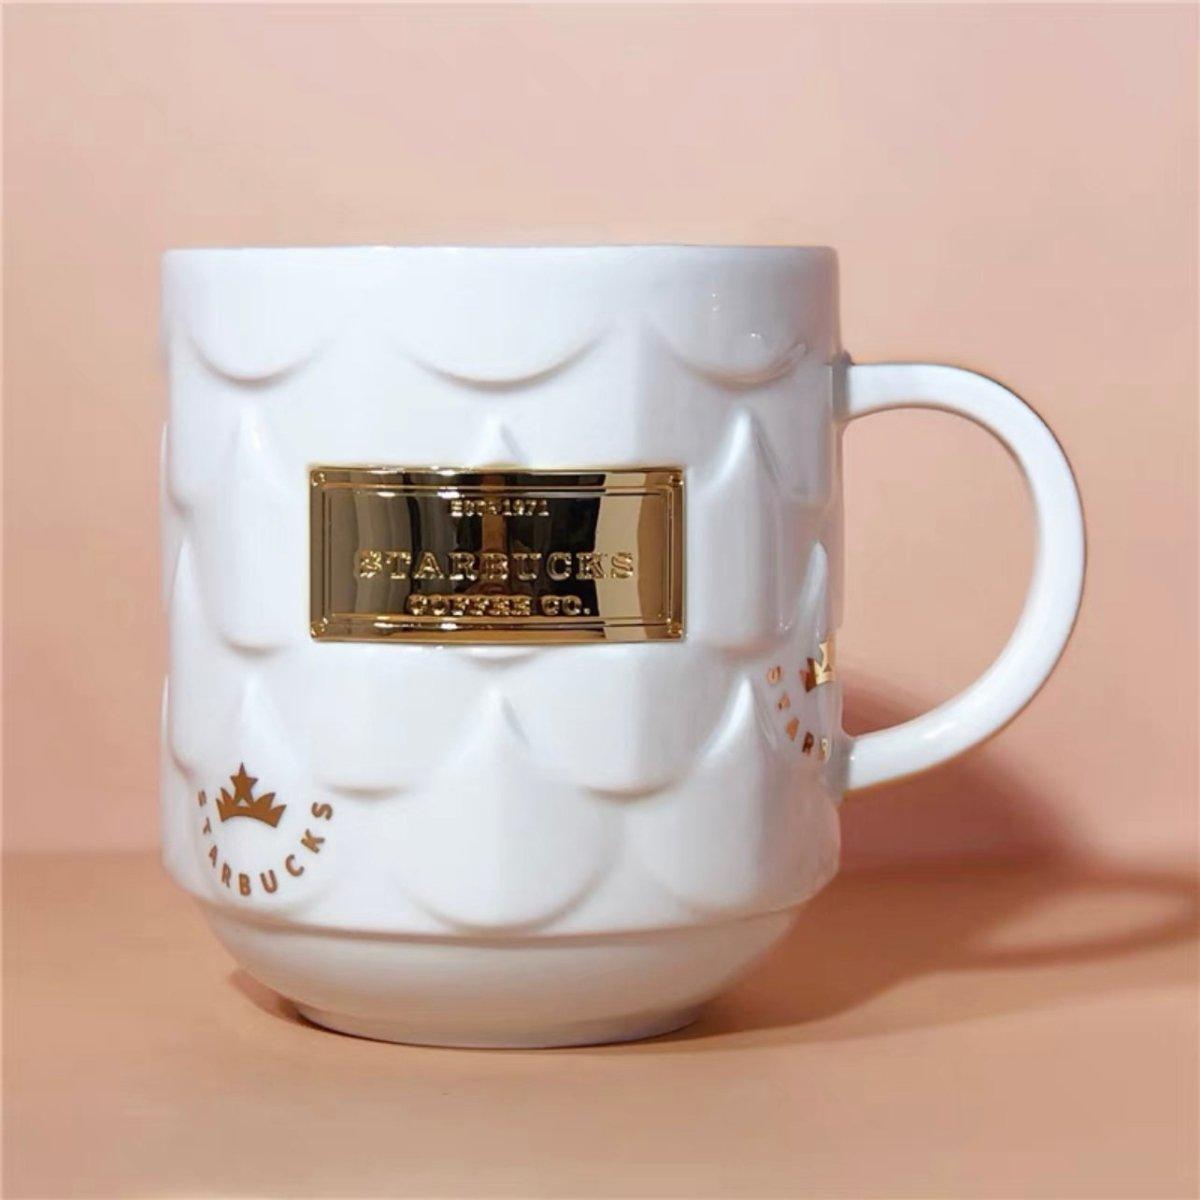 Starbucks China White Gold Ceramic Mug - Ann Ann Starbucks